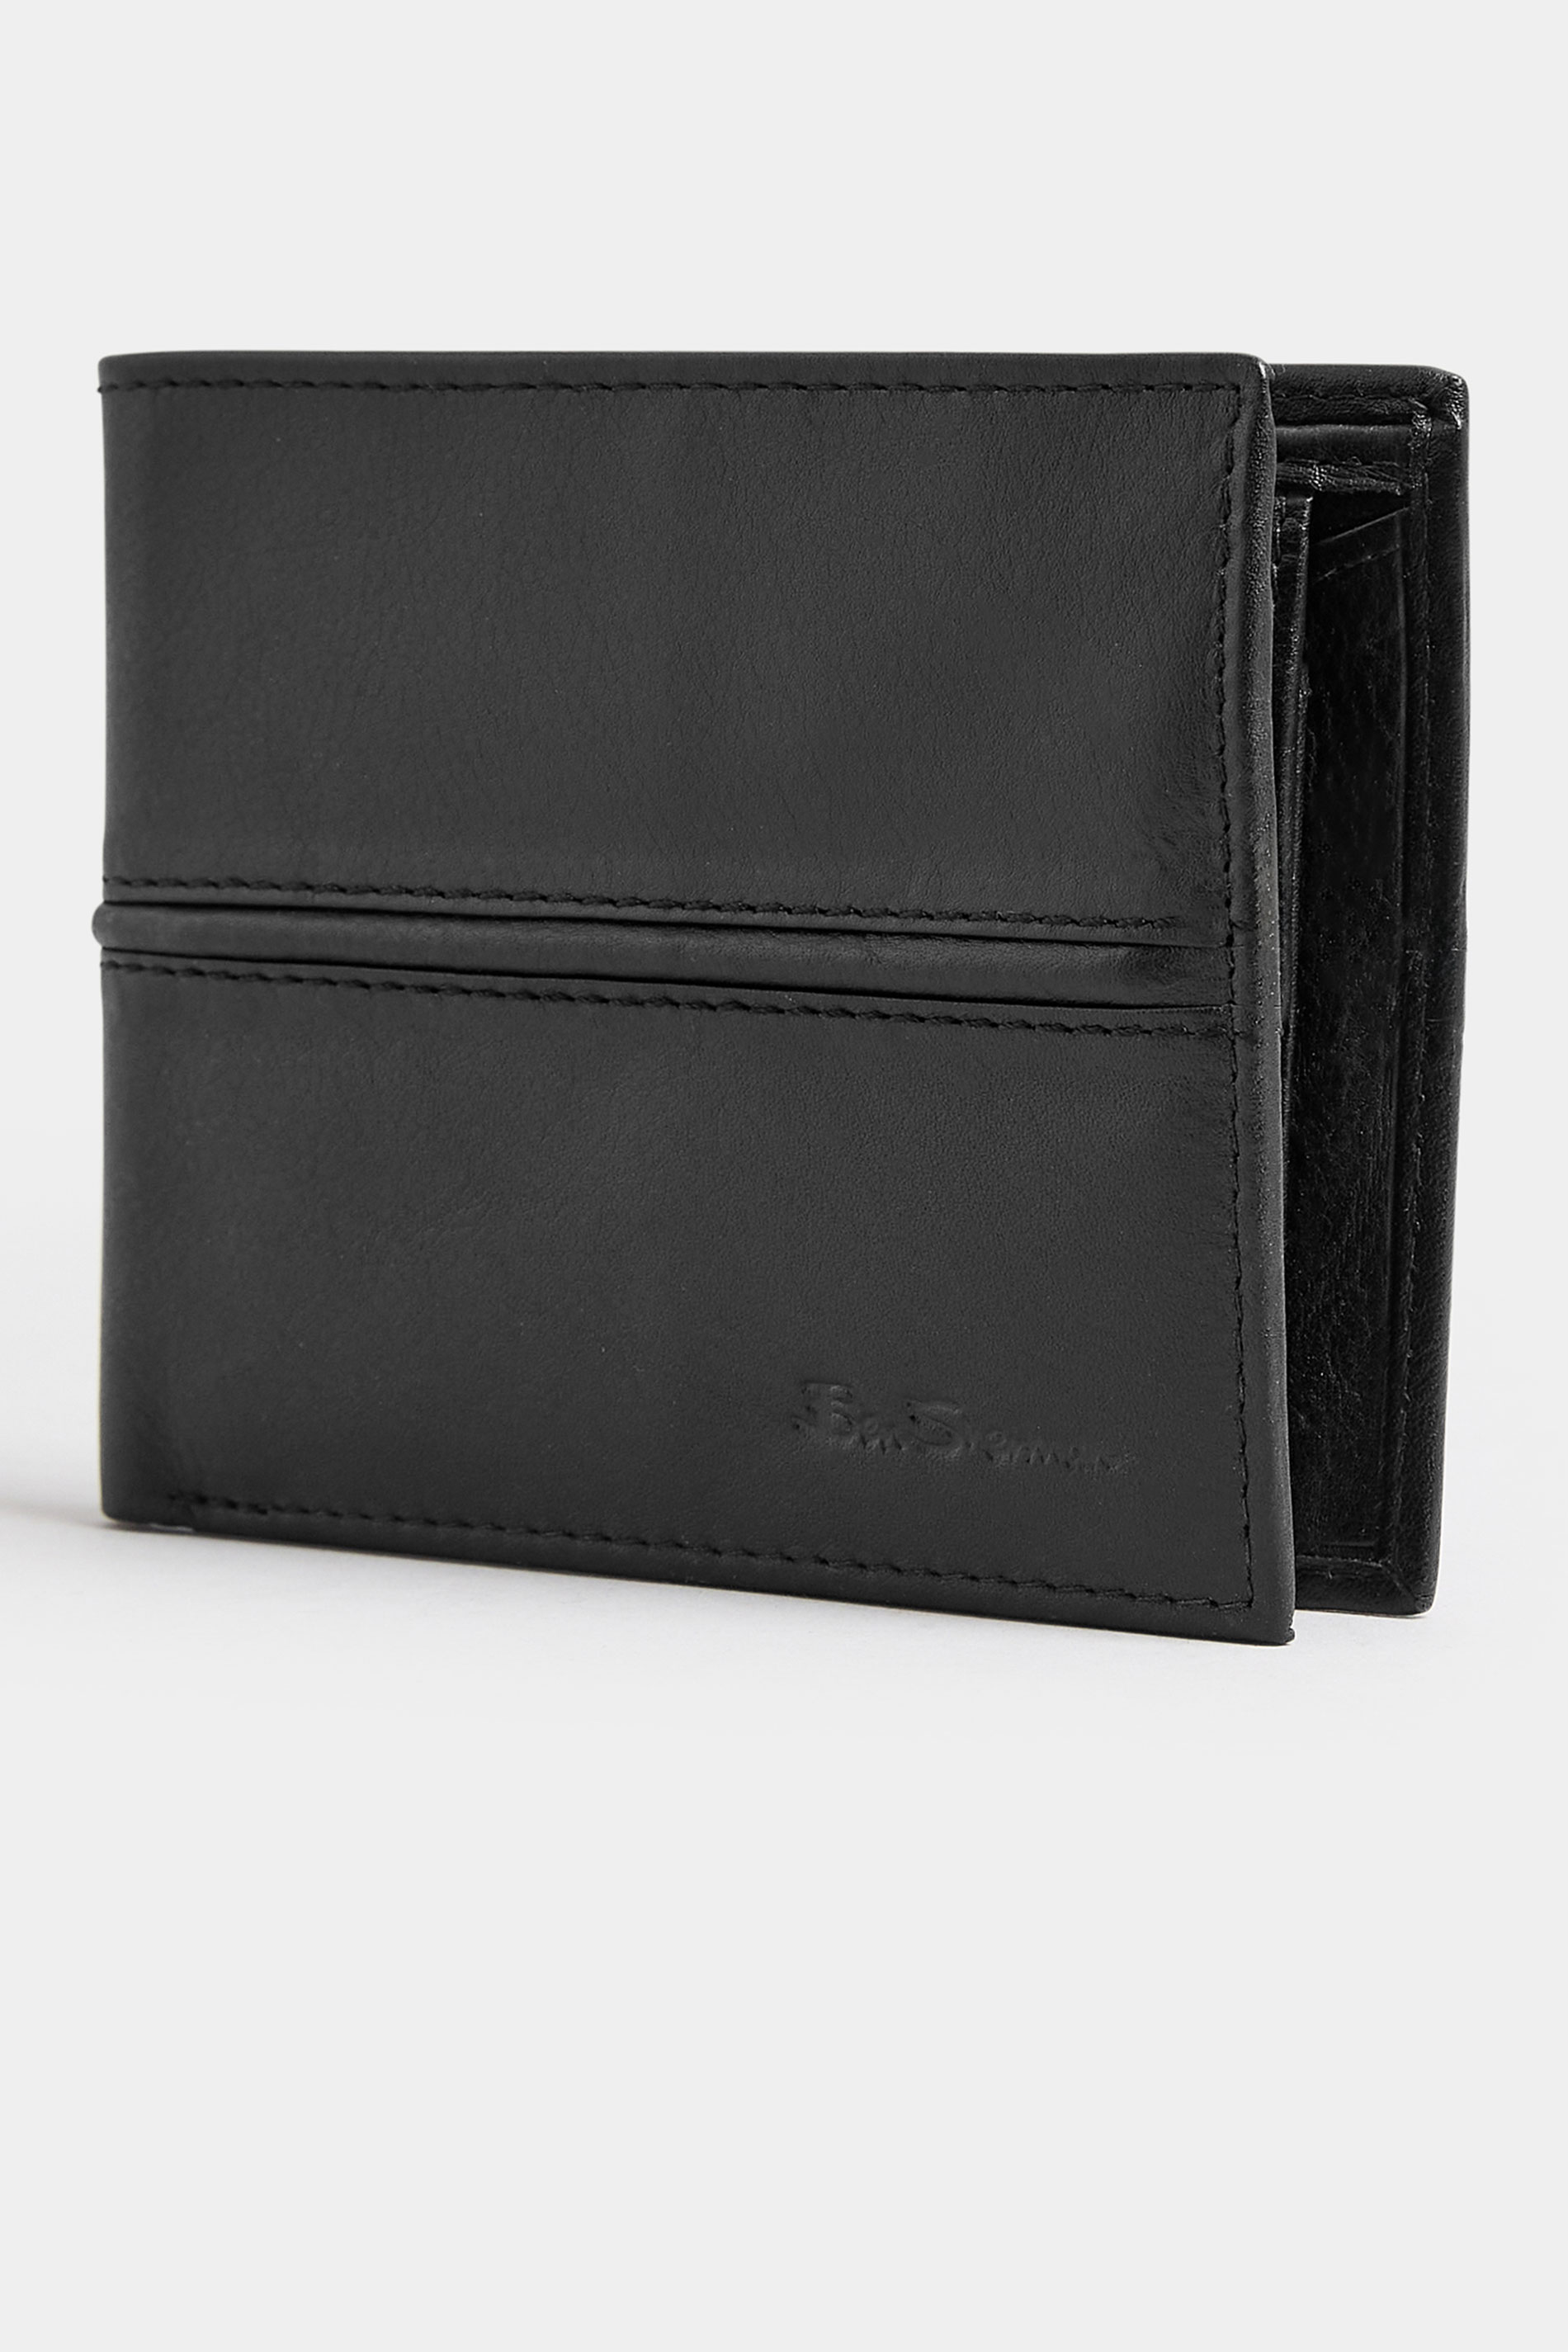 BEN SHERMAN Black Leather 'Freeman' Bi-Fold Wallet | BadRhino 1